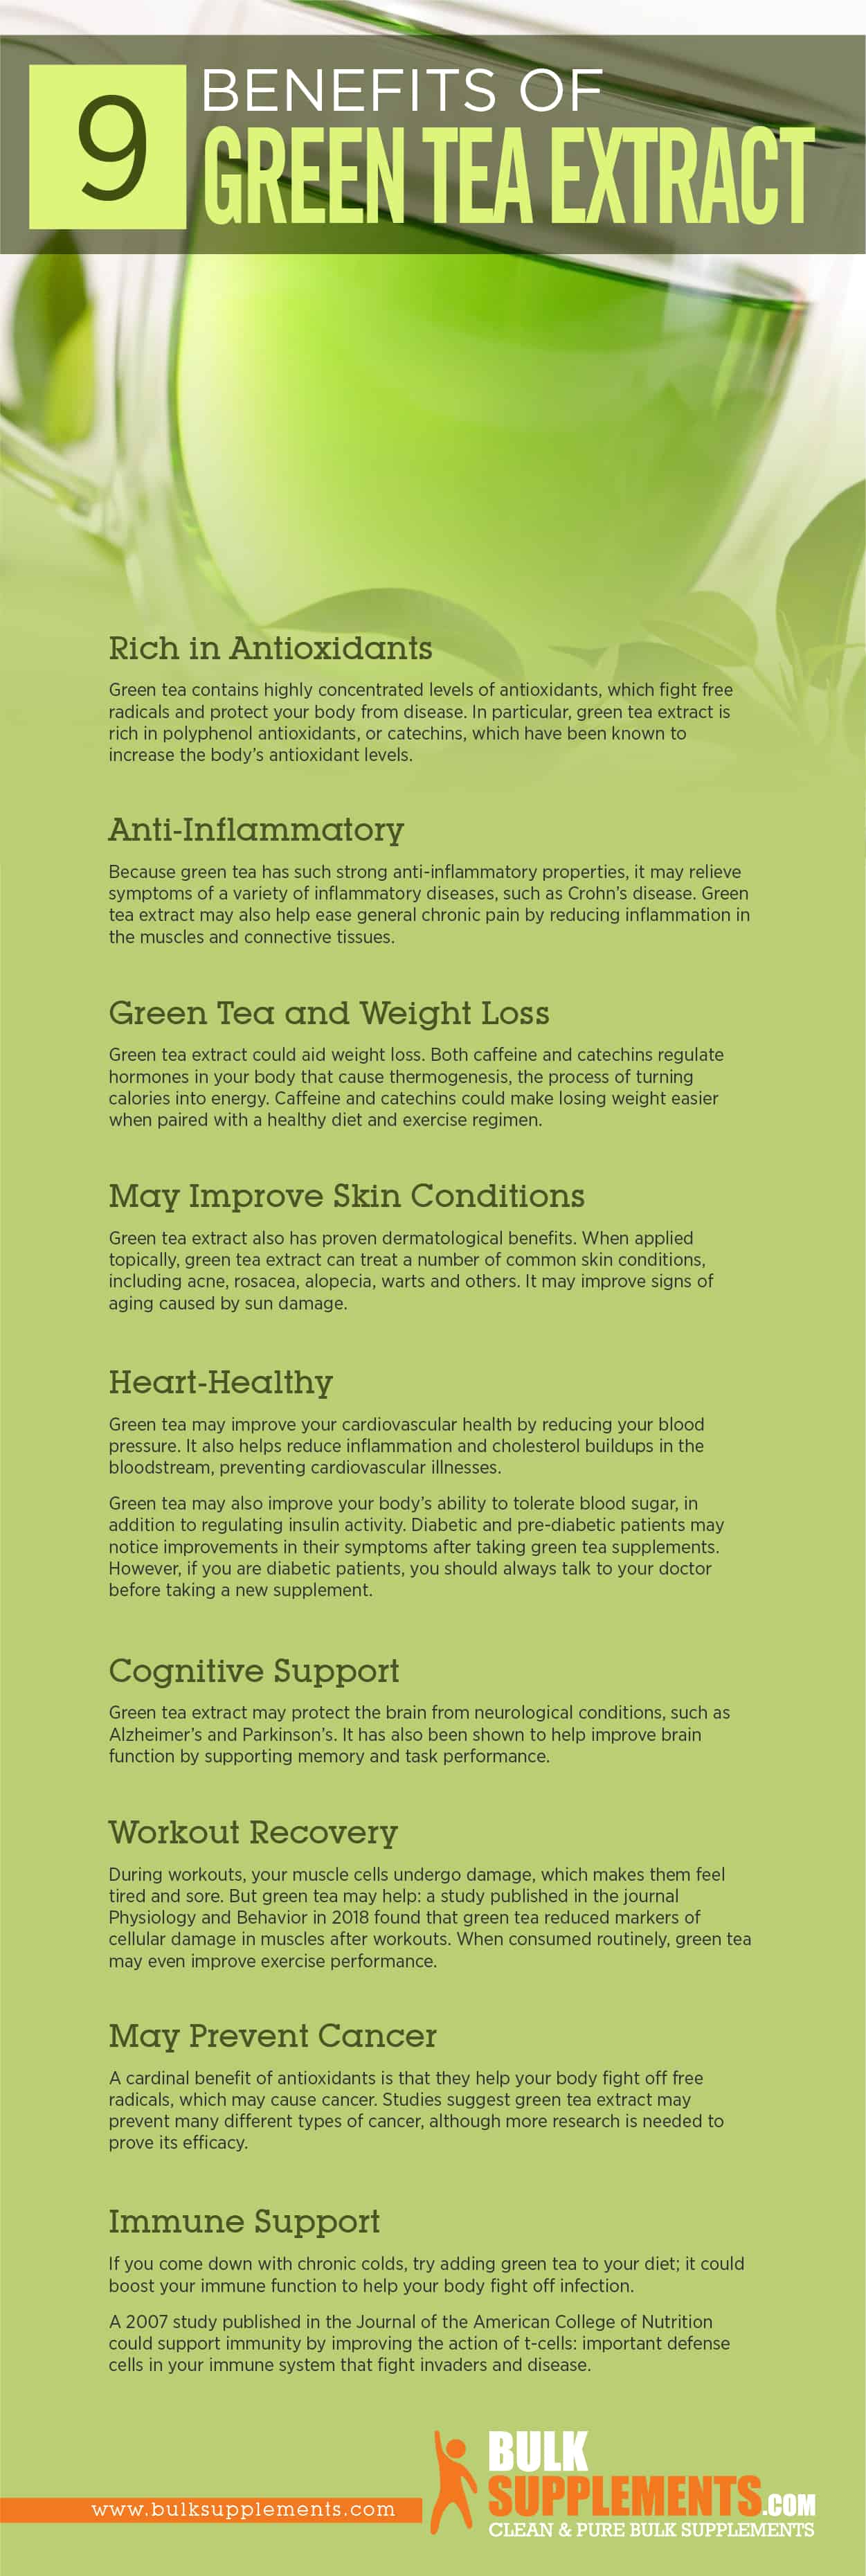 Green Tea Extract Benefits